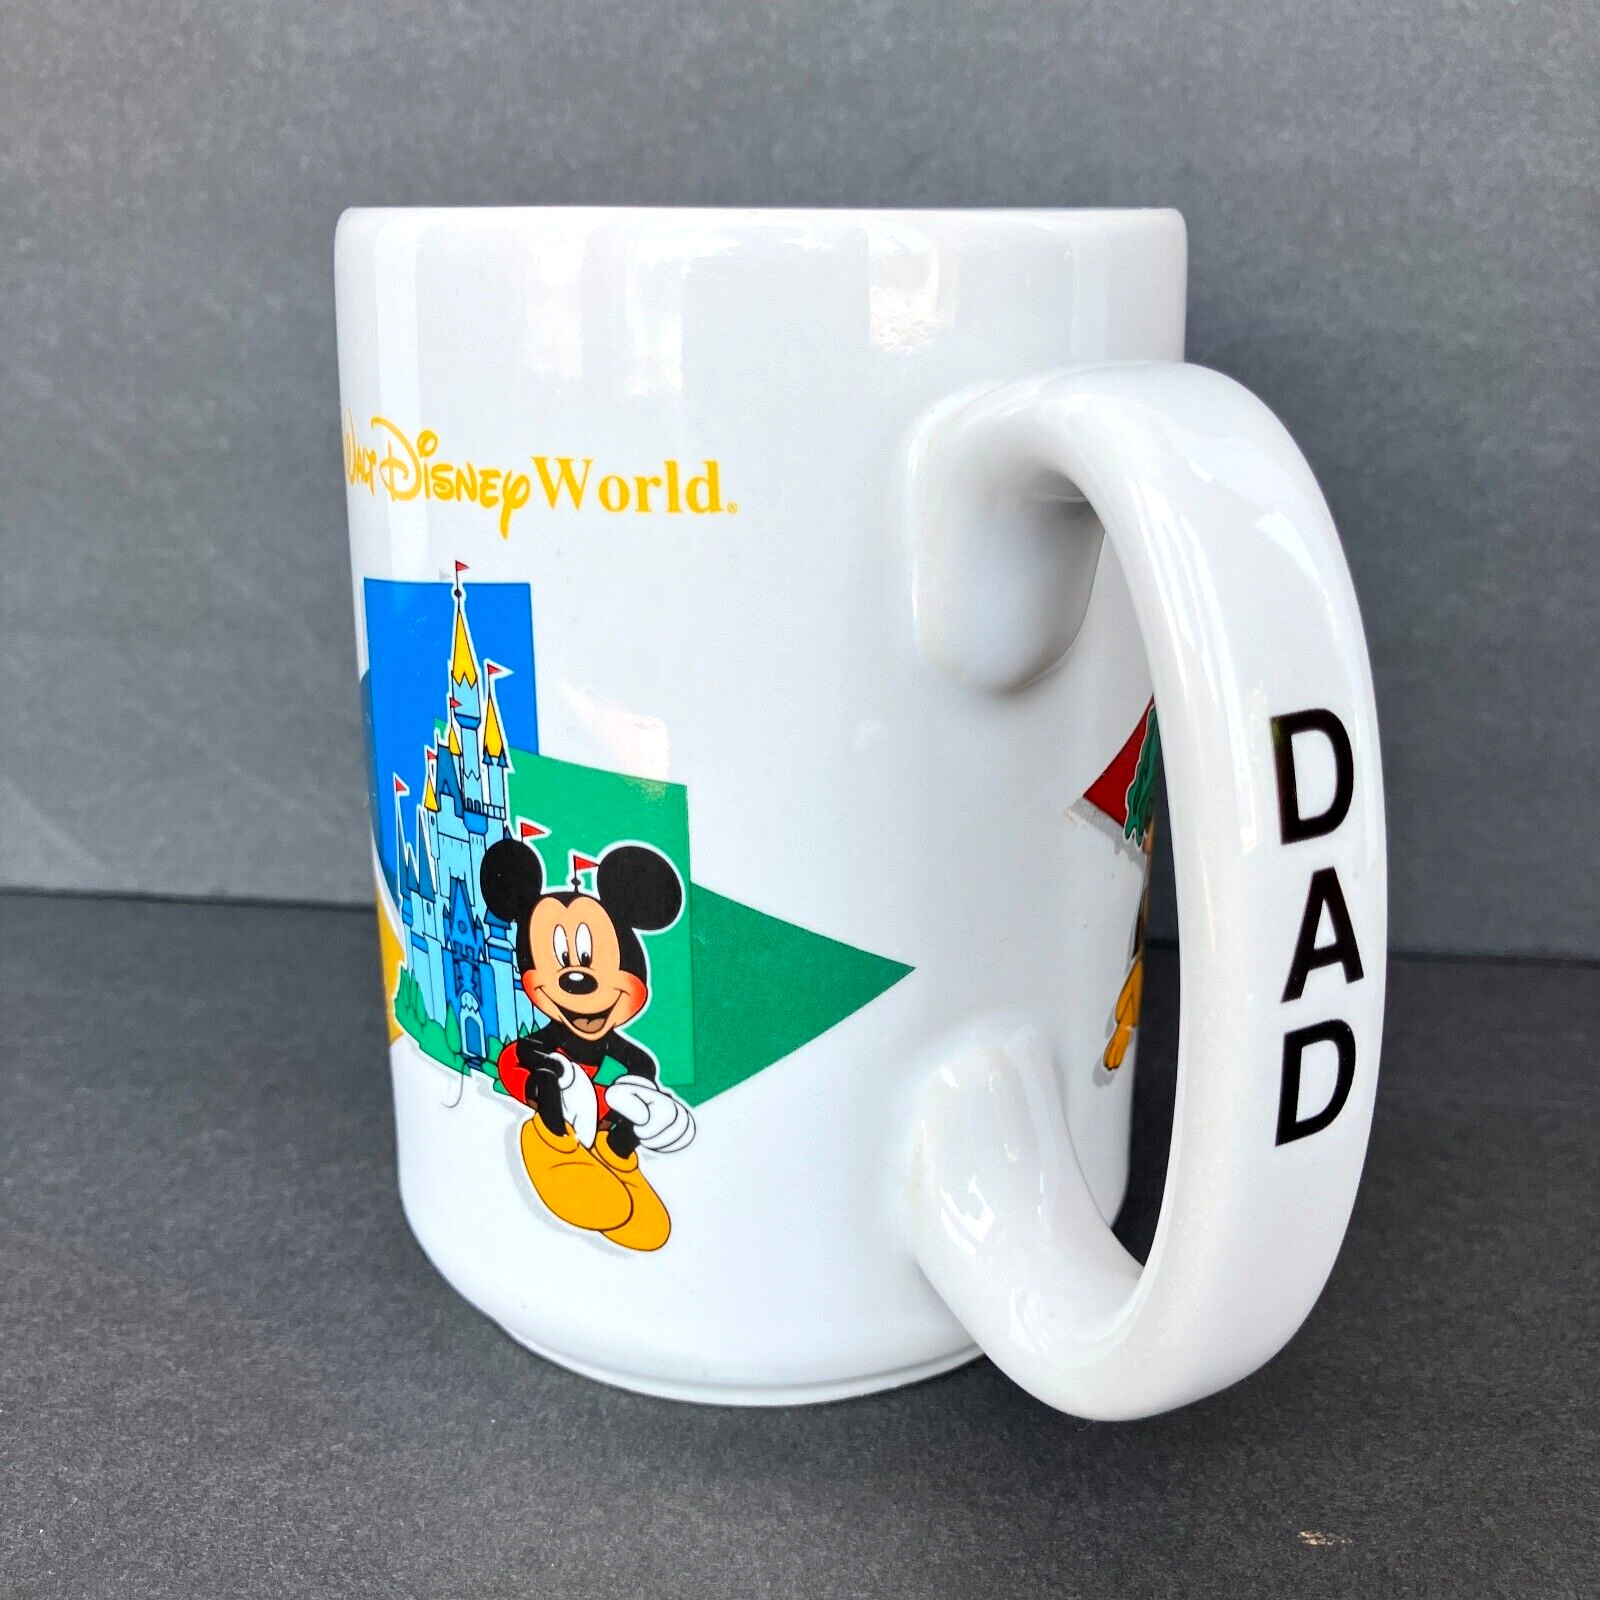 Vintage Walt Disney World DAD Mug Coffee Ceramic Cup Four Parks One World 14 oz